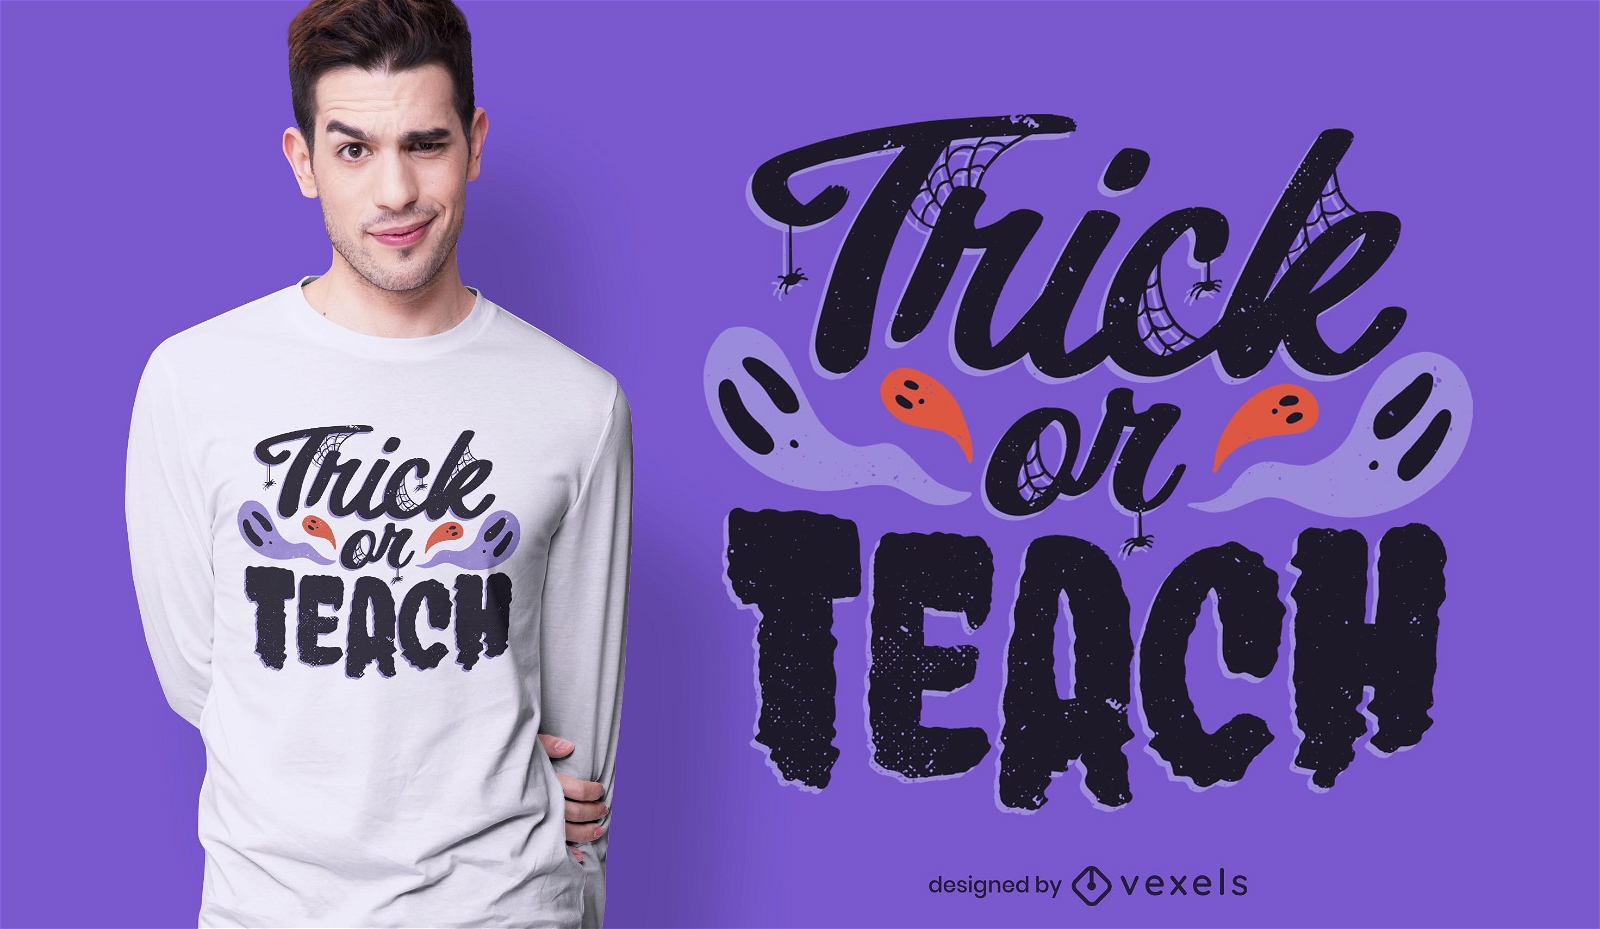 Trick or teach halloween t-shirt design